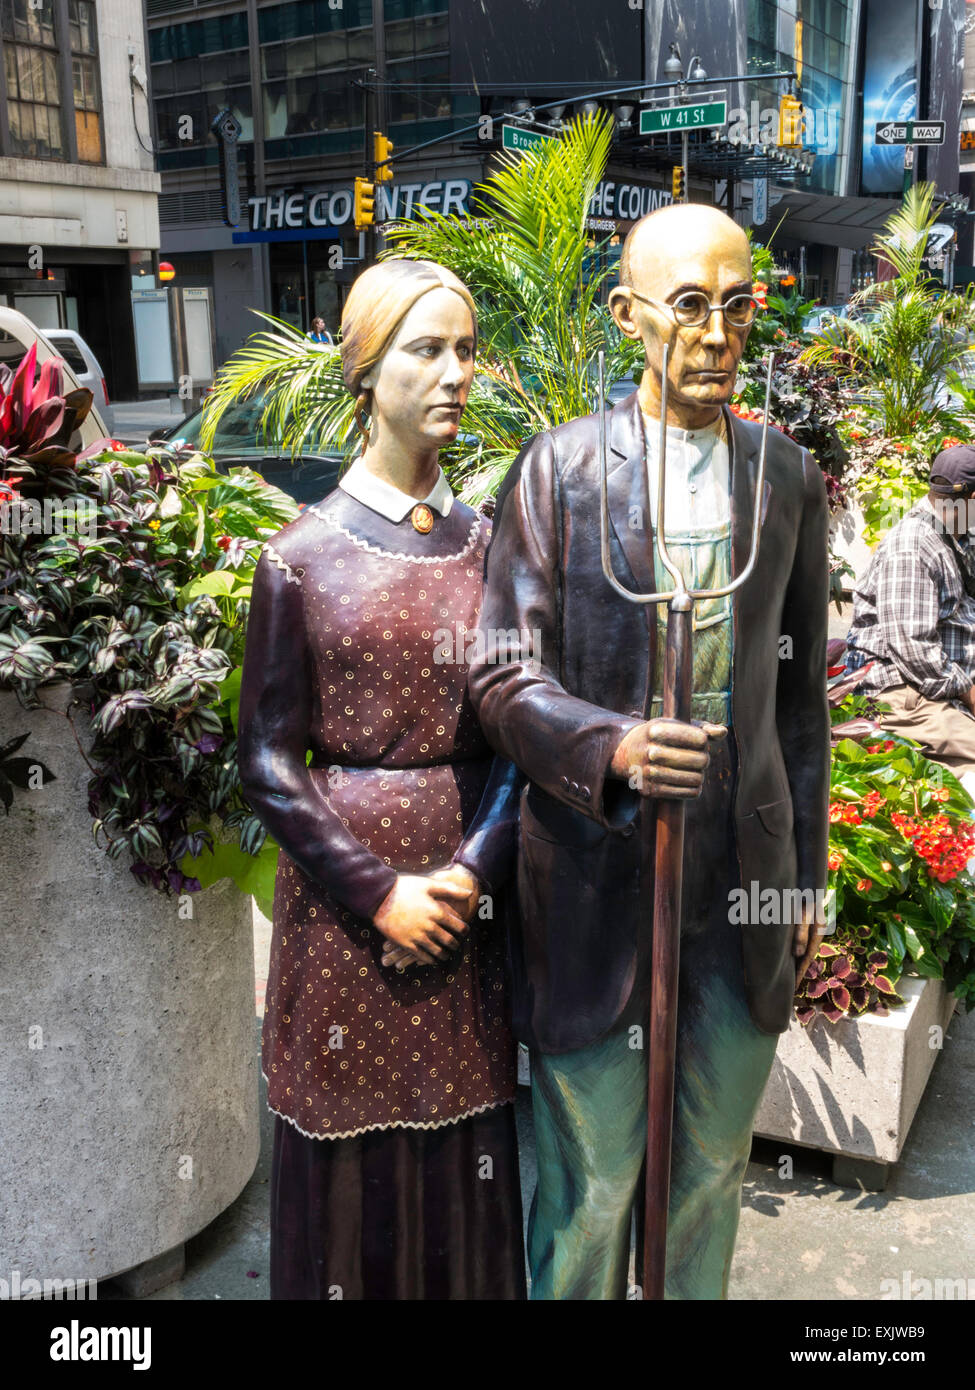 American Gothic Statues, Seward Johnson la pièce, Broadway Plaza piétonnière, NYC USA Banque D'Images